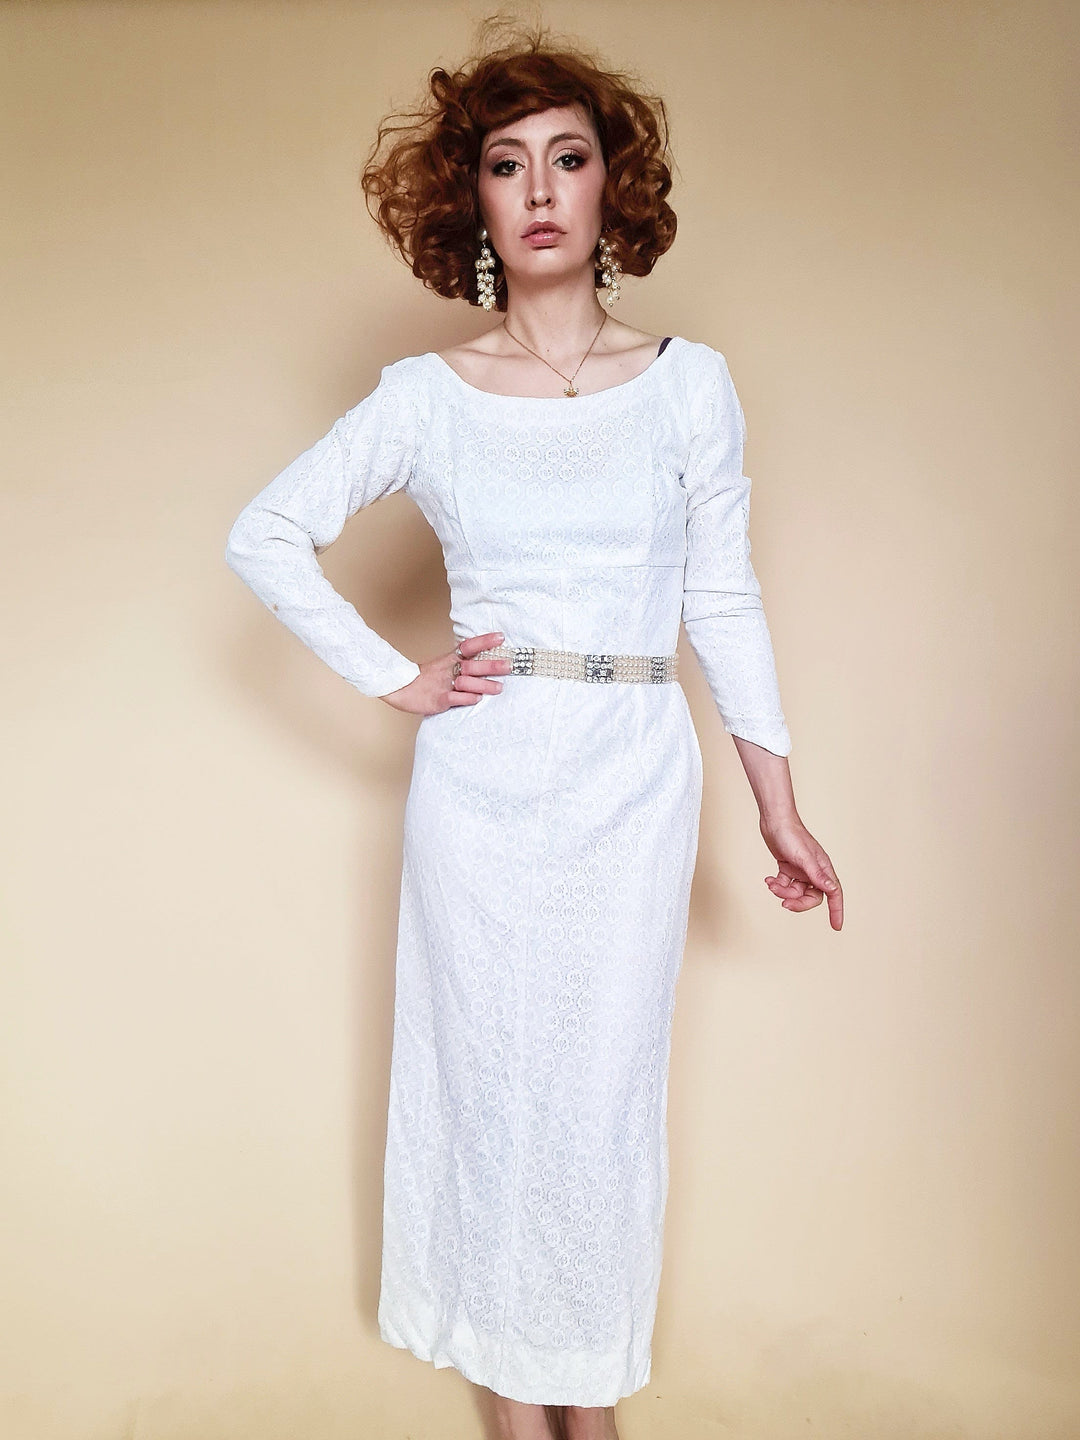 narcisses-boutique-nice-ville-friperie Robes de mariée Robe Mariée Eve vintage T.XS/S vintage-femme-petits-prix